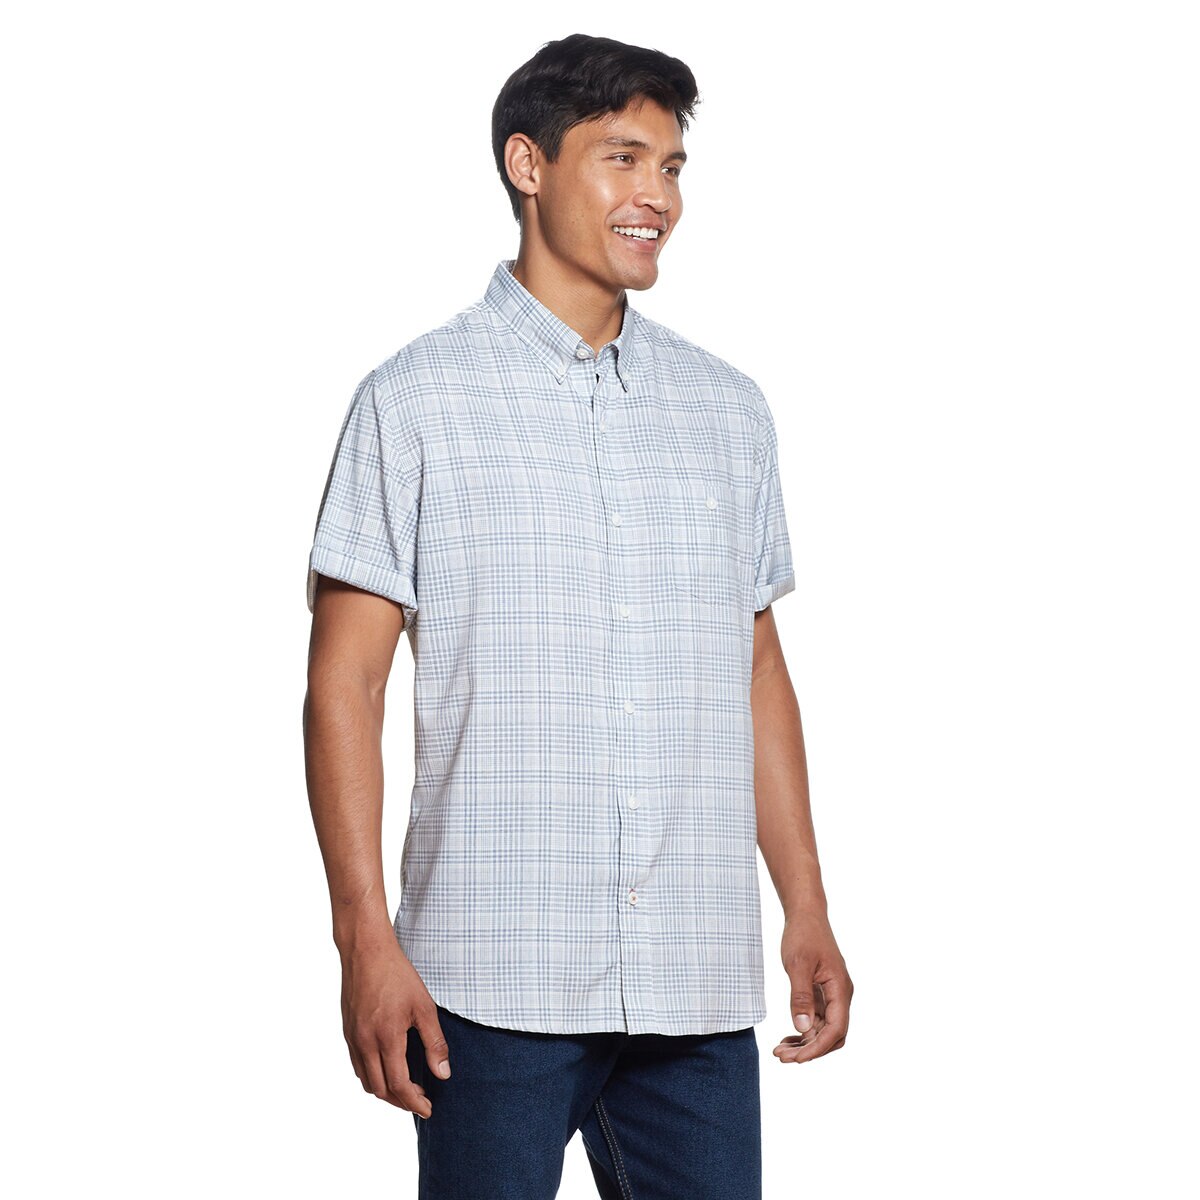 Weatherproof, Camisa para Caballero Varias Tallas y Colores Blanco con Azul